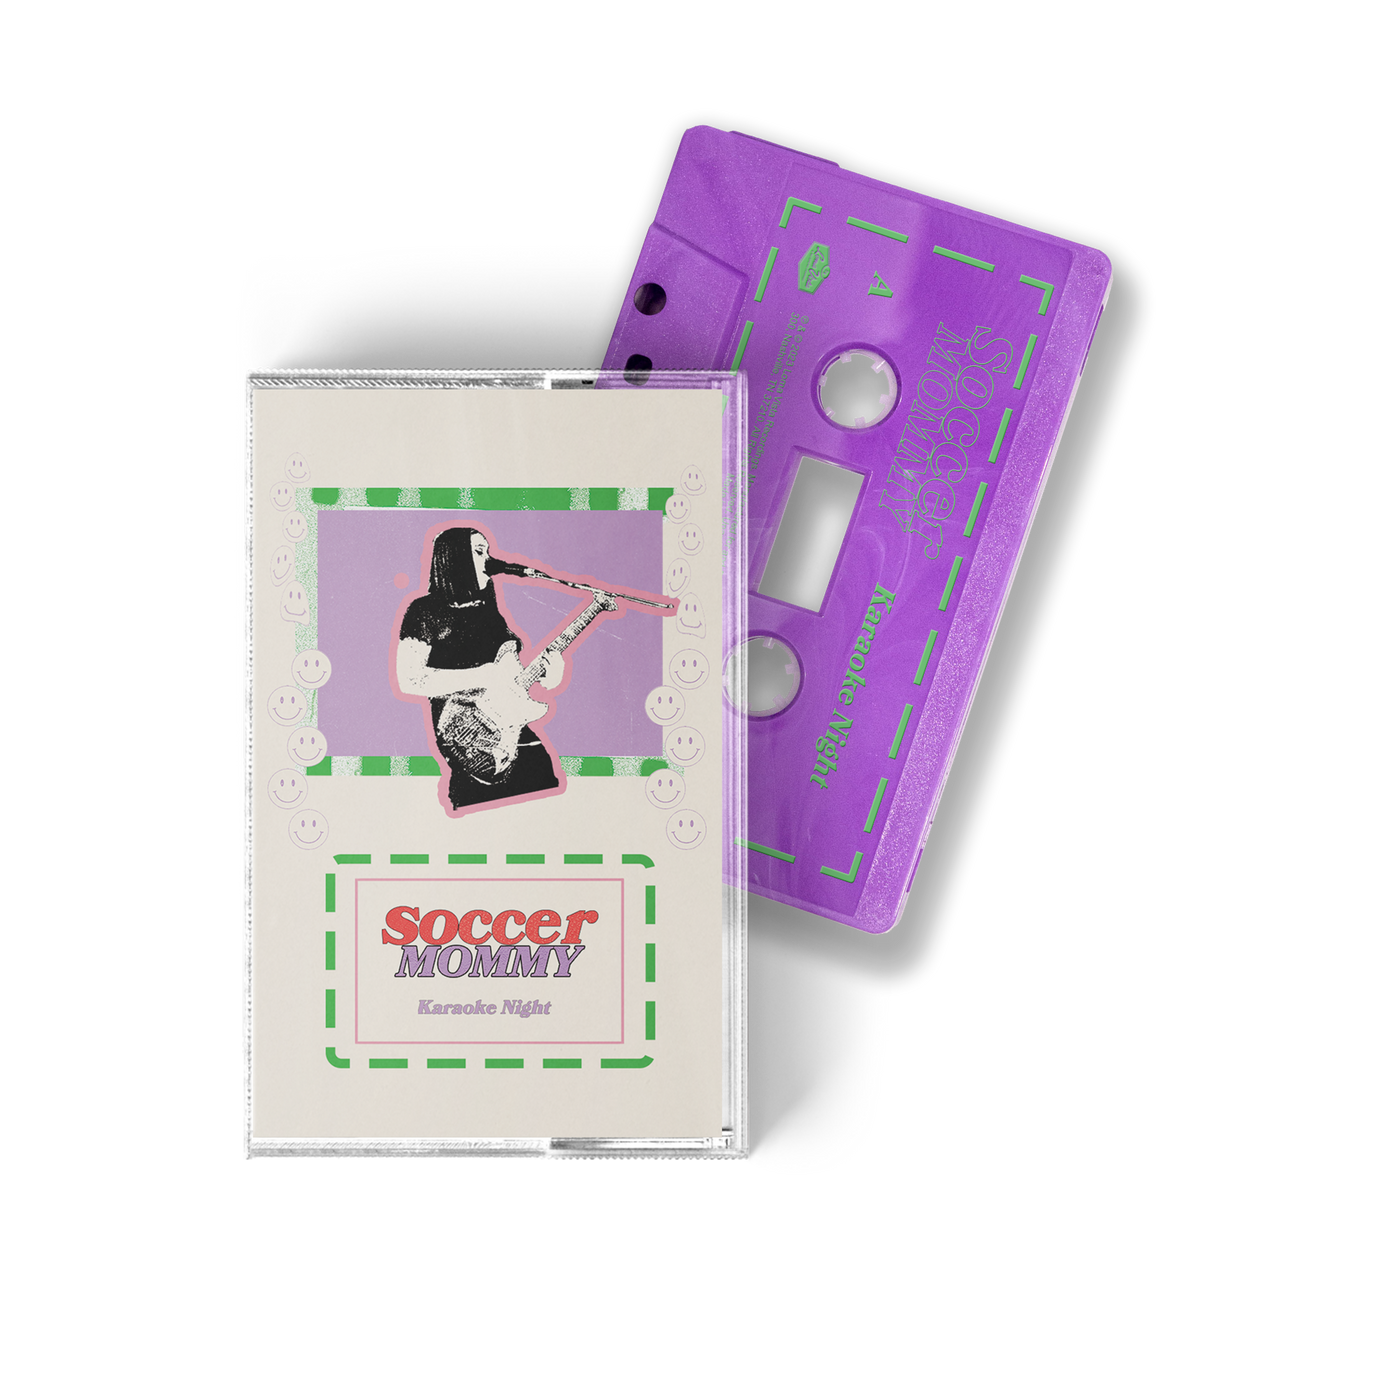 Karaoke Night Limited Edition Purple Cassette